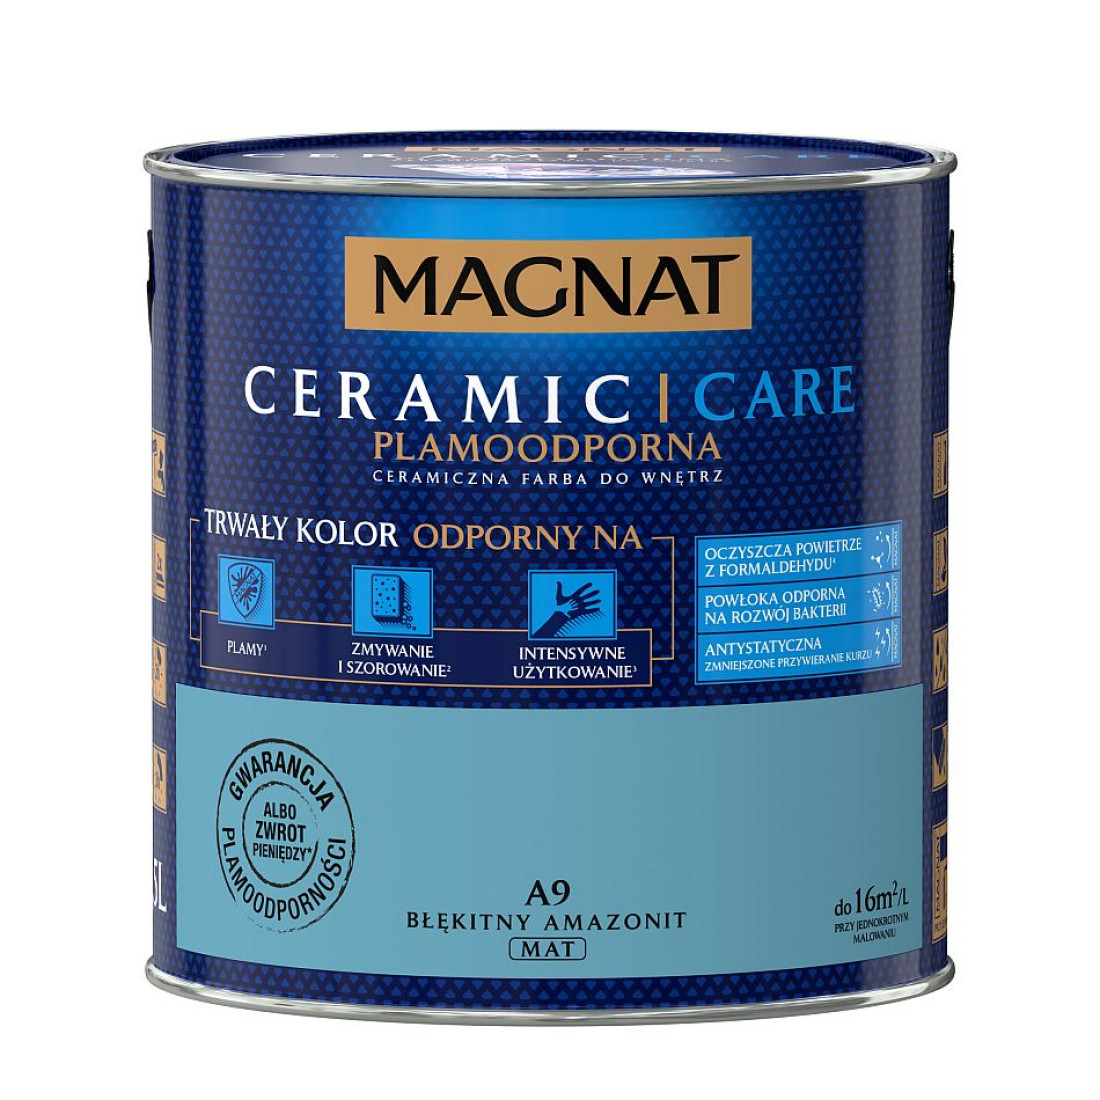 MAGNAT Ceramic Care - farba, która dba o Ciebie